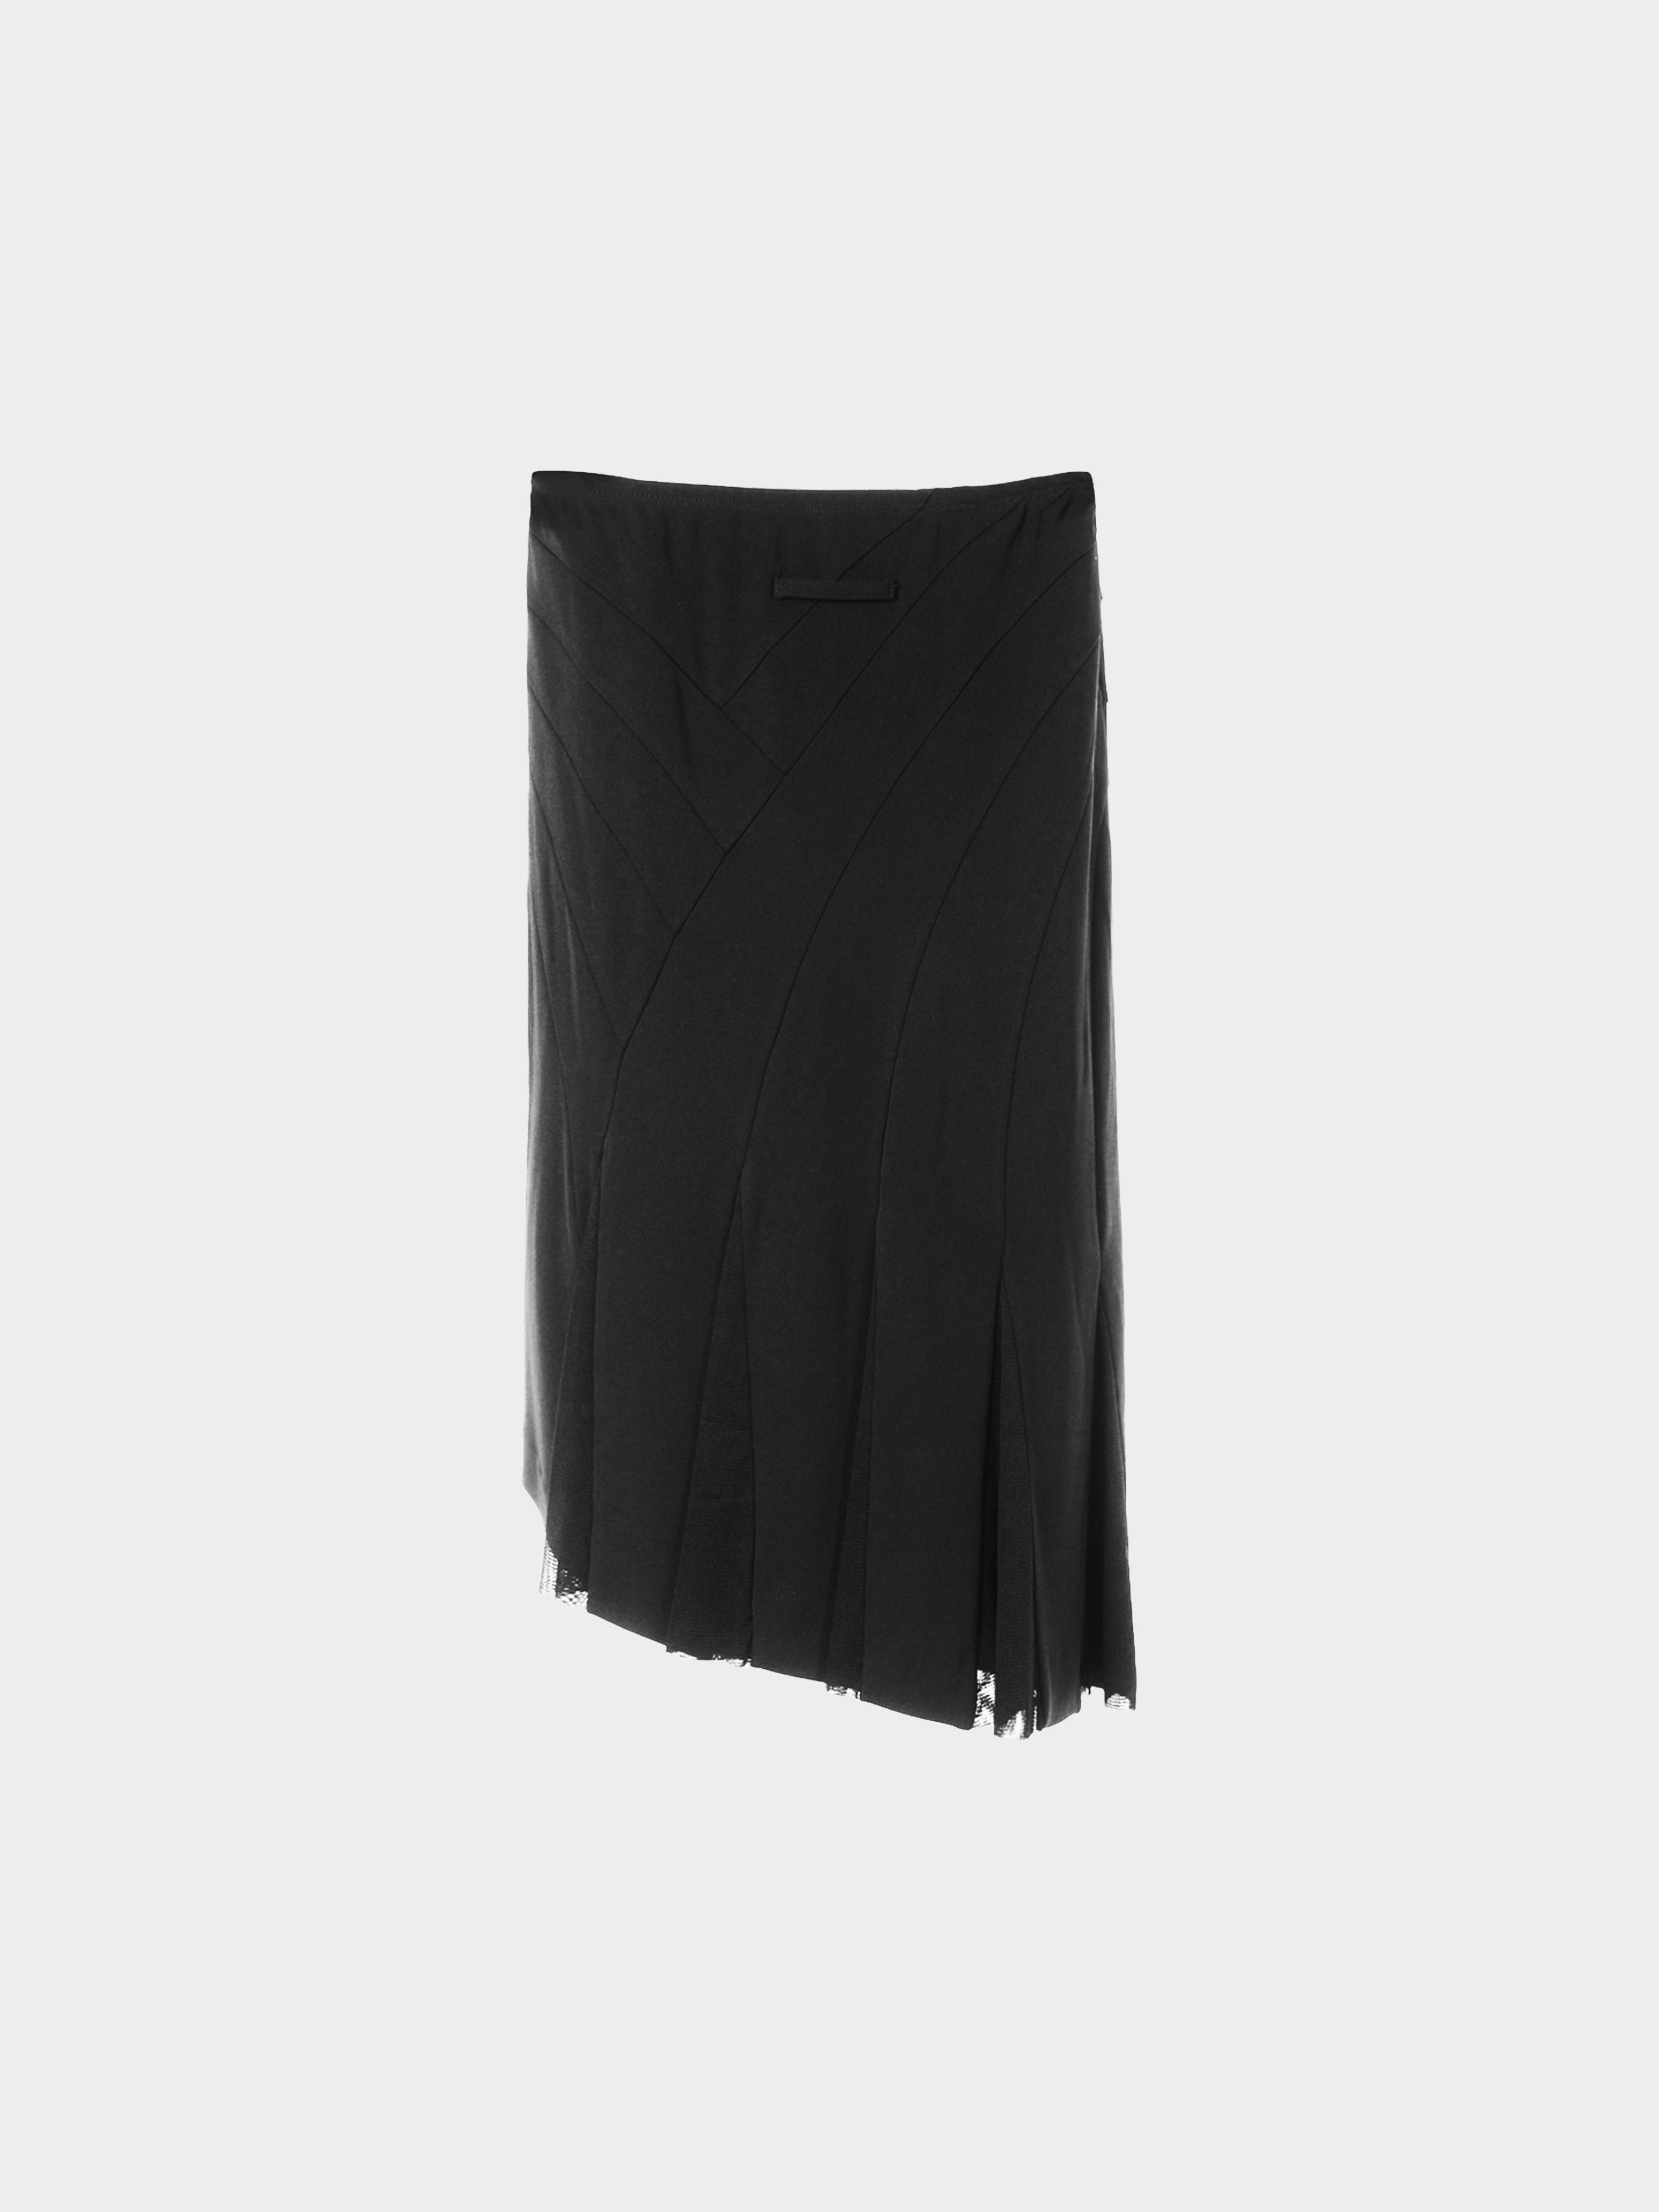 Jean Paul Gaultier 1990s Pleated Asymmetrical Skirt